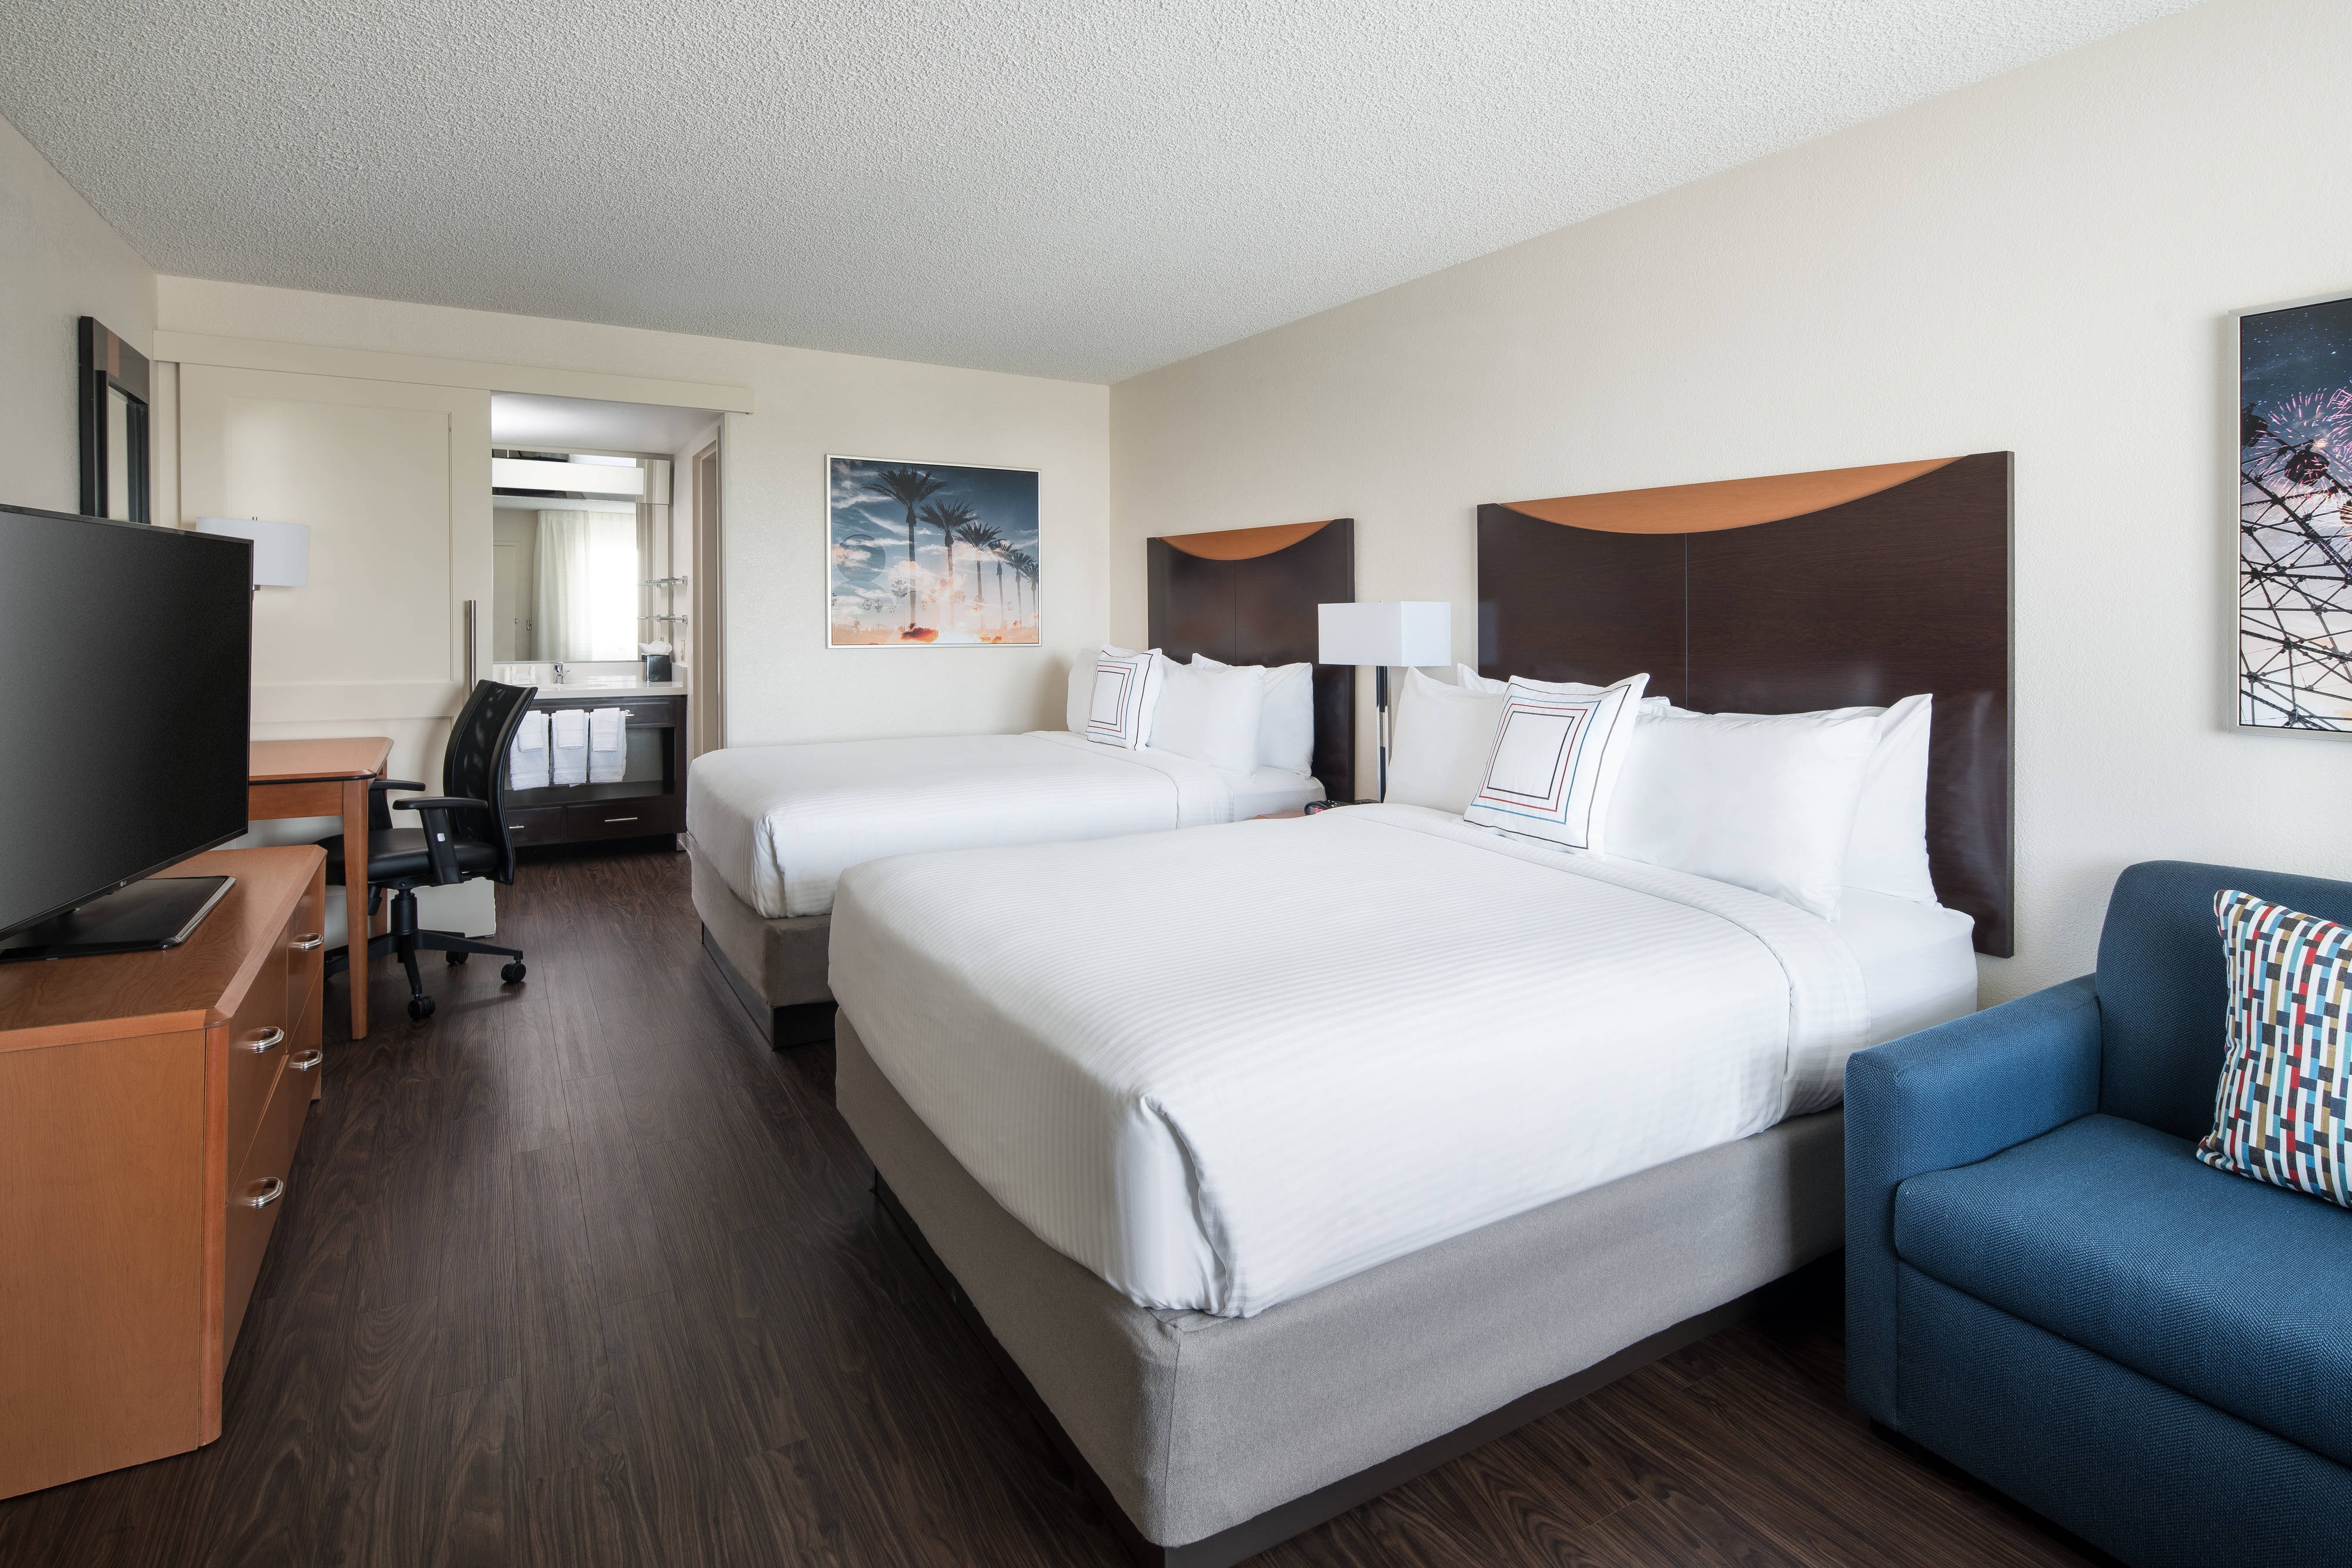 Hotel Rooms near Disneyland Anaheim Fairfield Inn Anaheim Resort